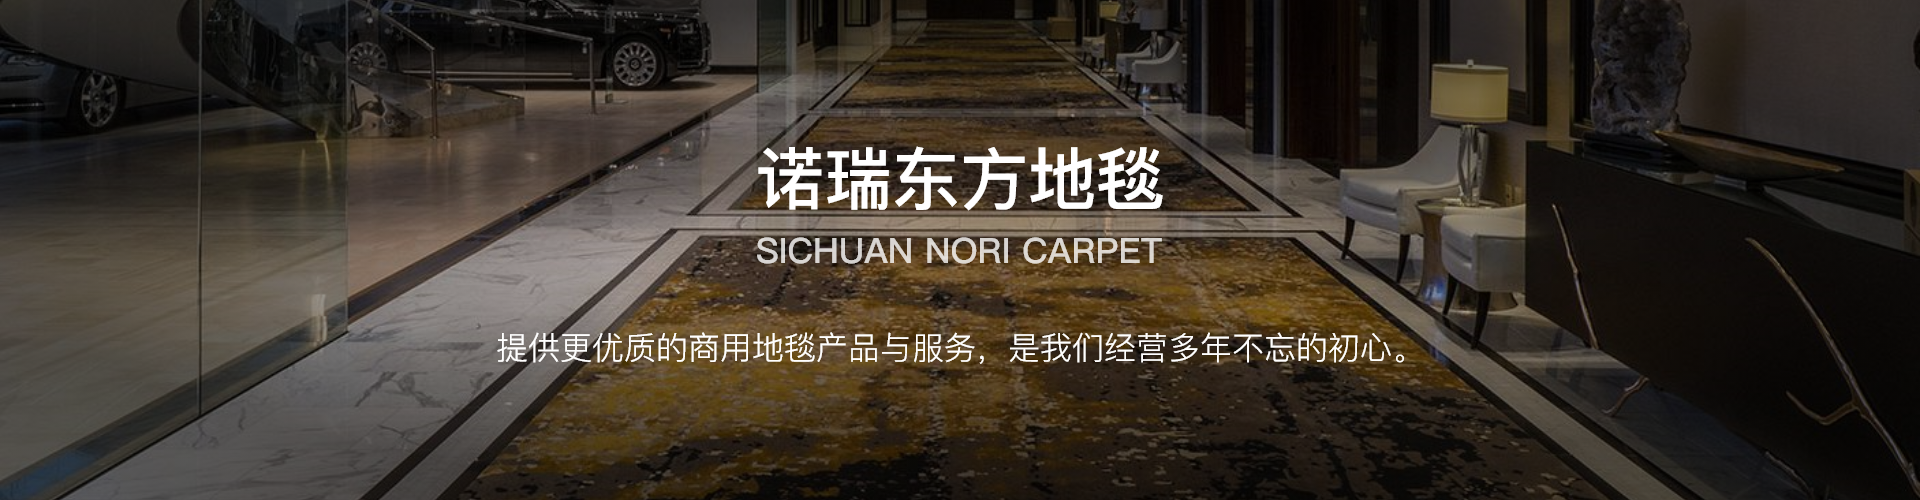 四川诺瑞东方地毯销售有限公司